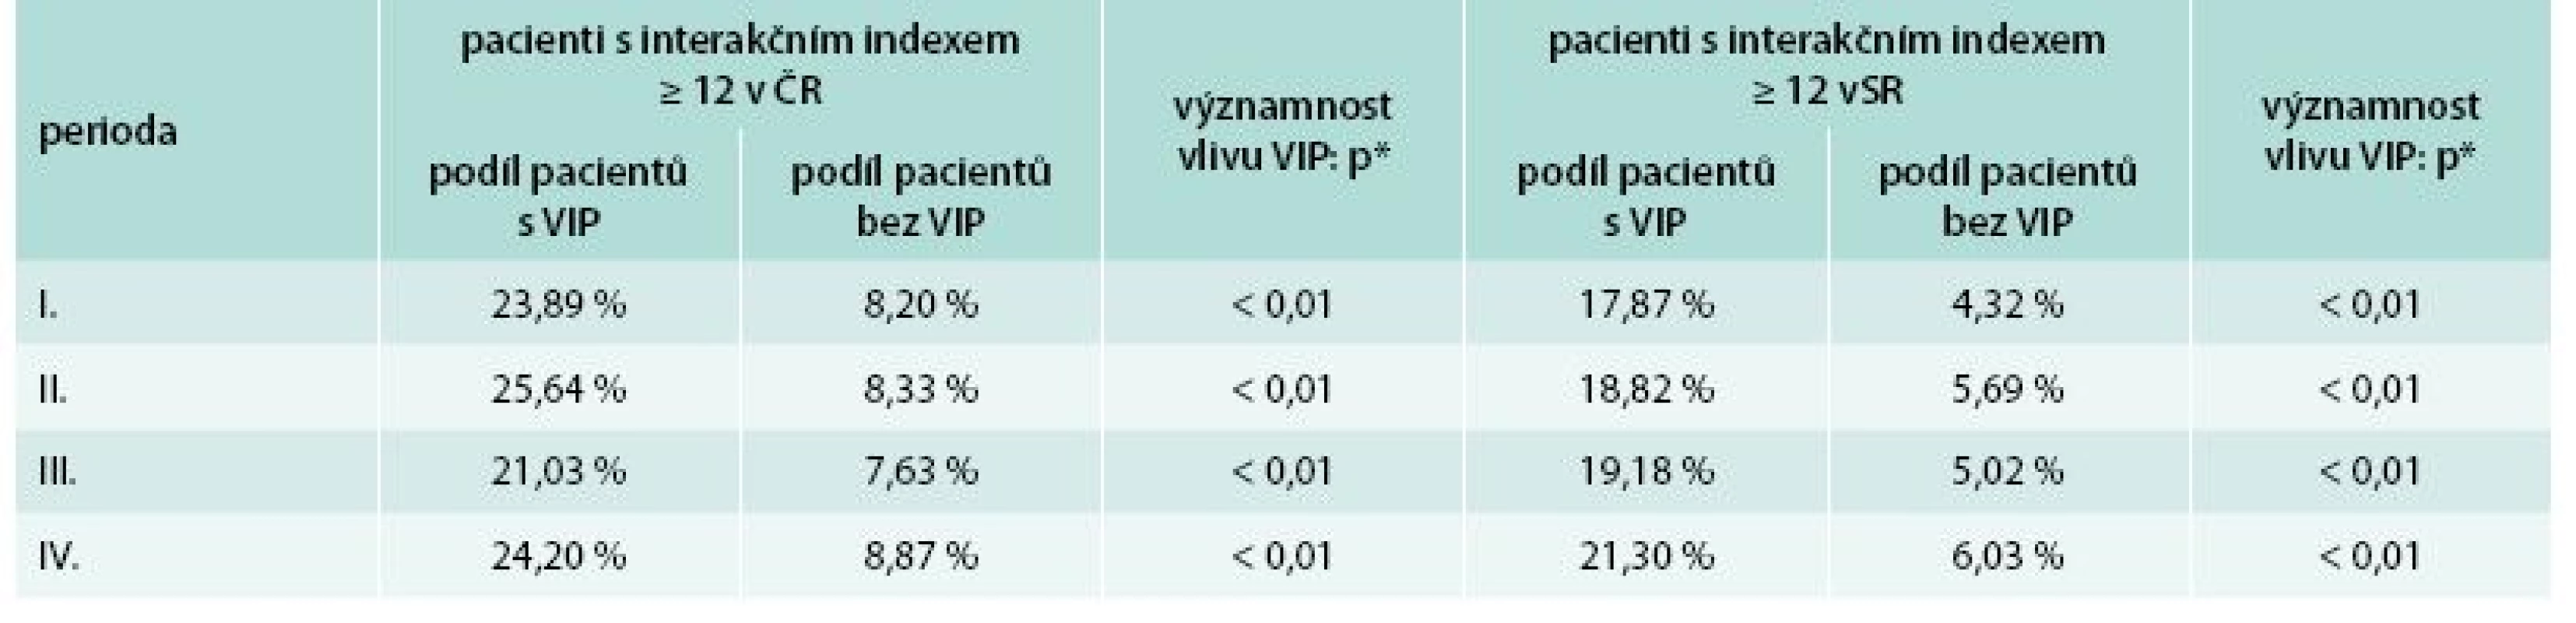 Prevalence pacientů s nadkritickou hodnotou interakčního indexu (≥ 12) v ČR a SR 
v rozčlenění dle přítomností alespoň 1 přípravku s vysokým interakčním potenciálem (VIP) v lékovém portfoliu pacienta